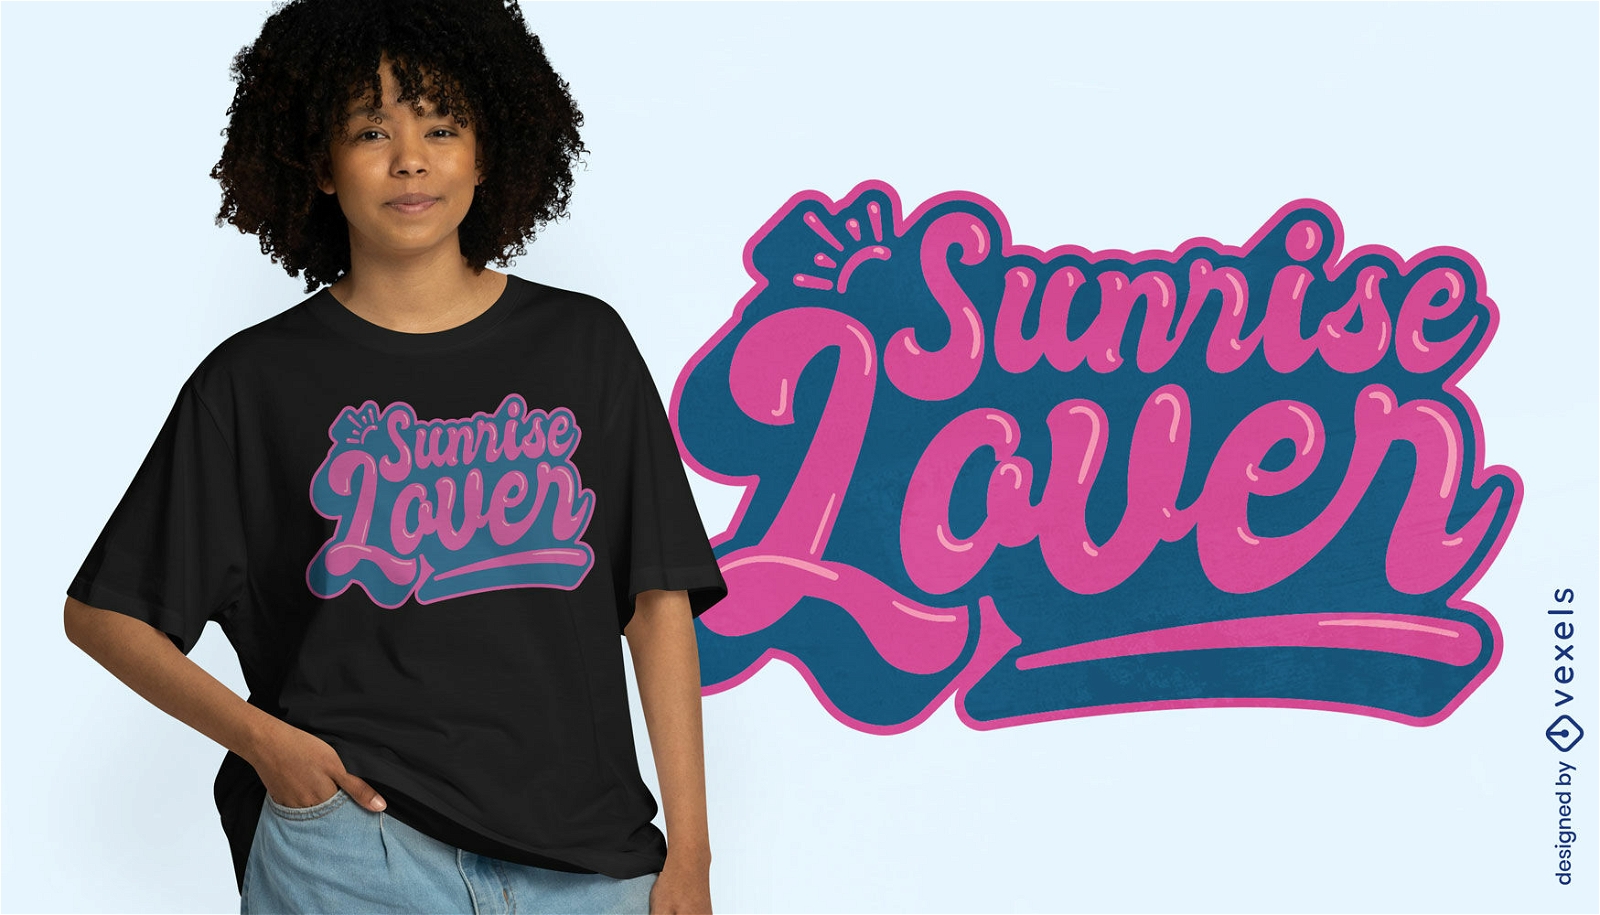 Sunrise lover t-shirt design